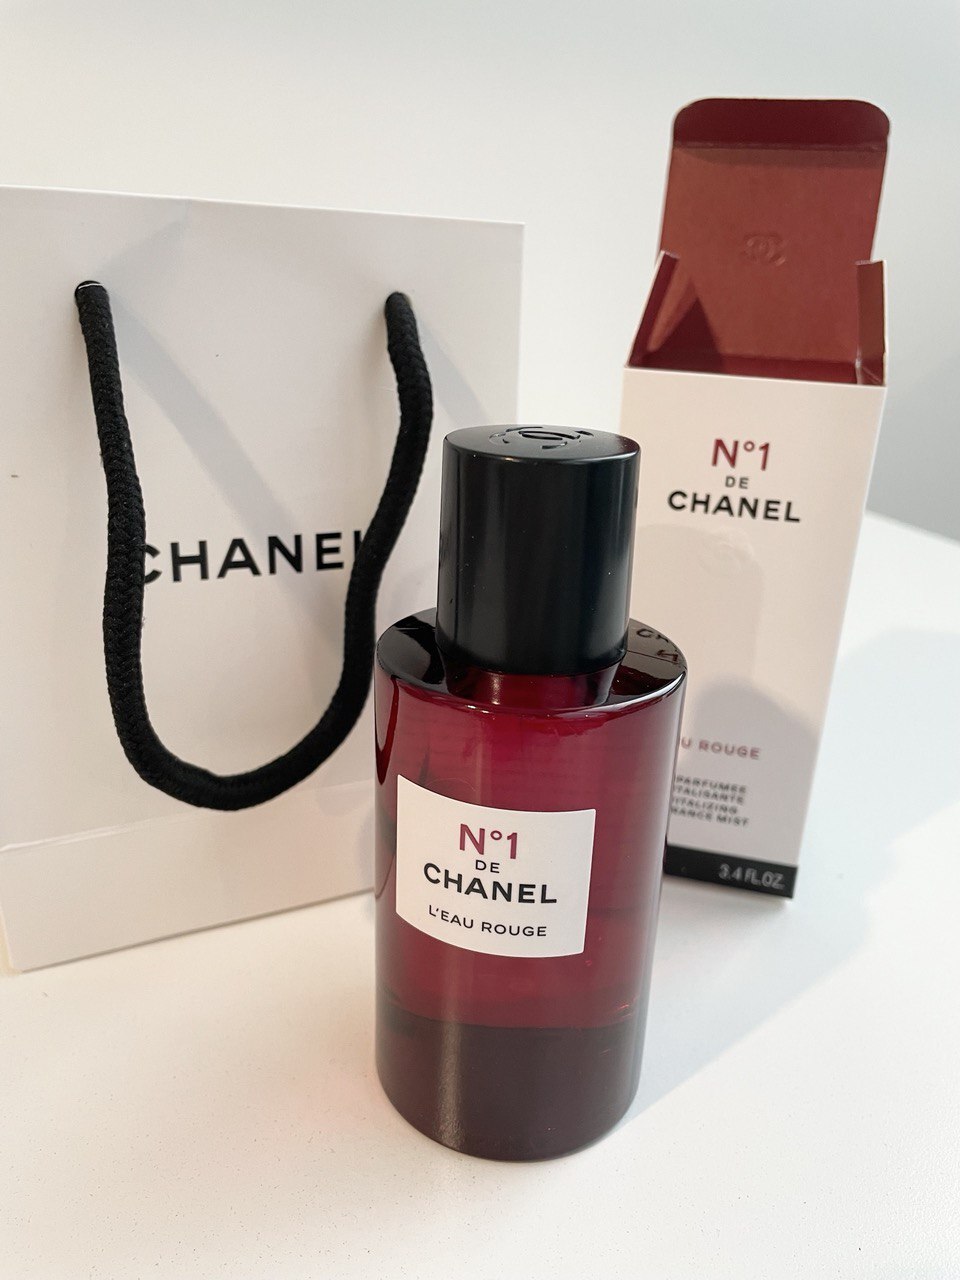 Chanel No1 de Chanel L'Eau Rouge